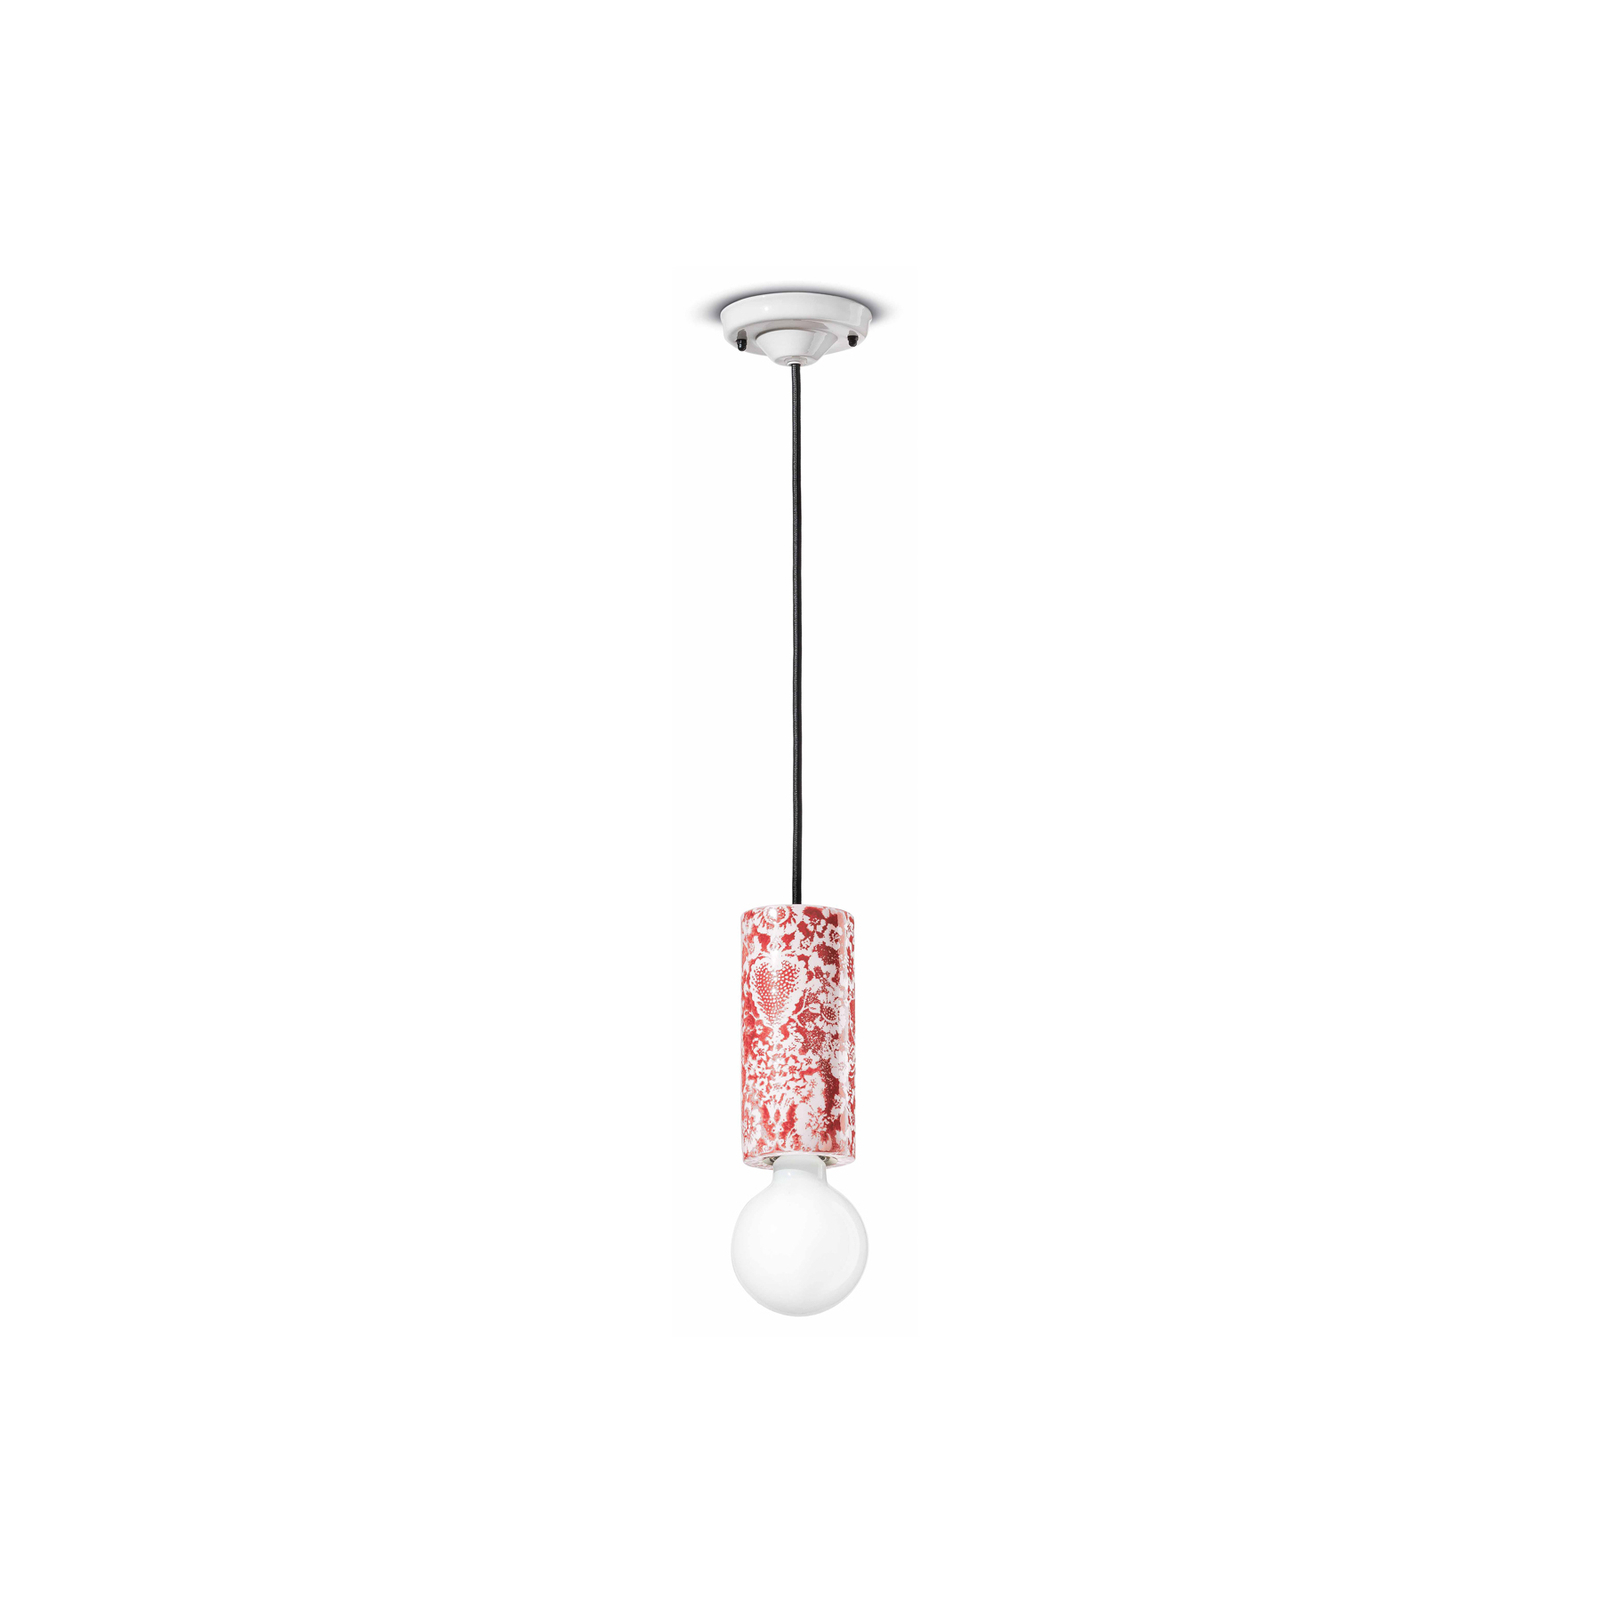 PI hanging light, floral pattern Ø 8 cm red/white